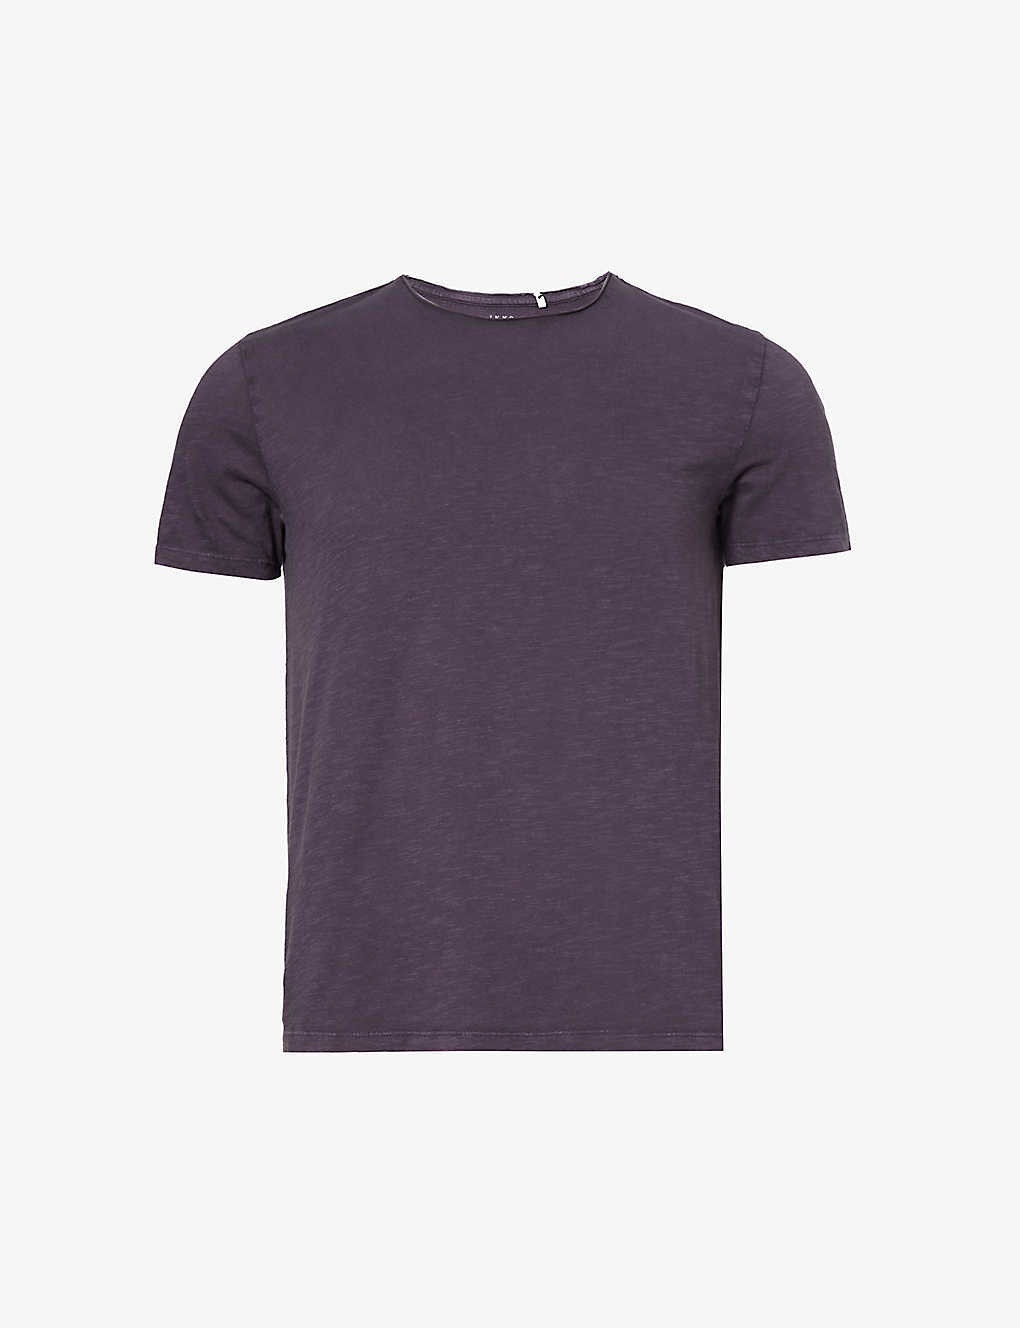 Ikks Mens Dark Plum Relaxed-fit Crewneck Cotton-jersey T-shirt